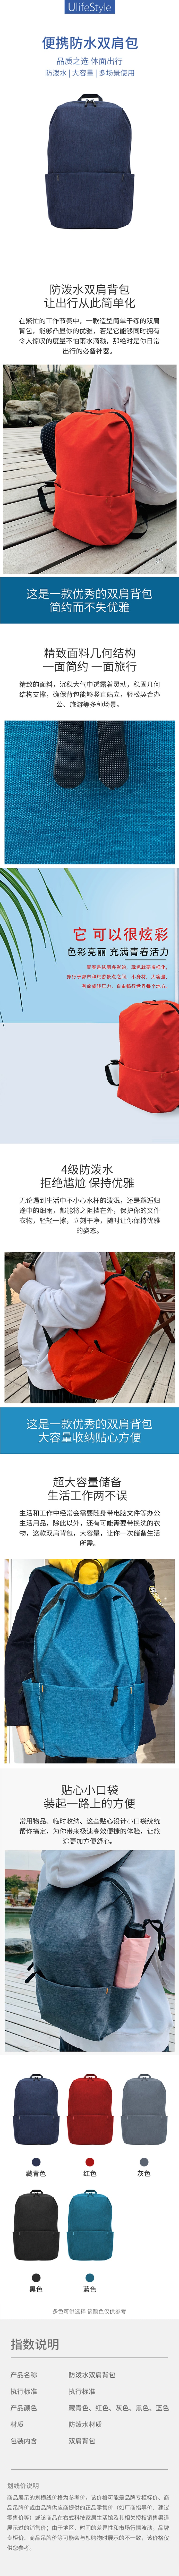 【中国直邮】英尼 运动健身背包 便携防水双肩包 藏青色